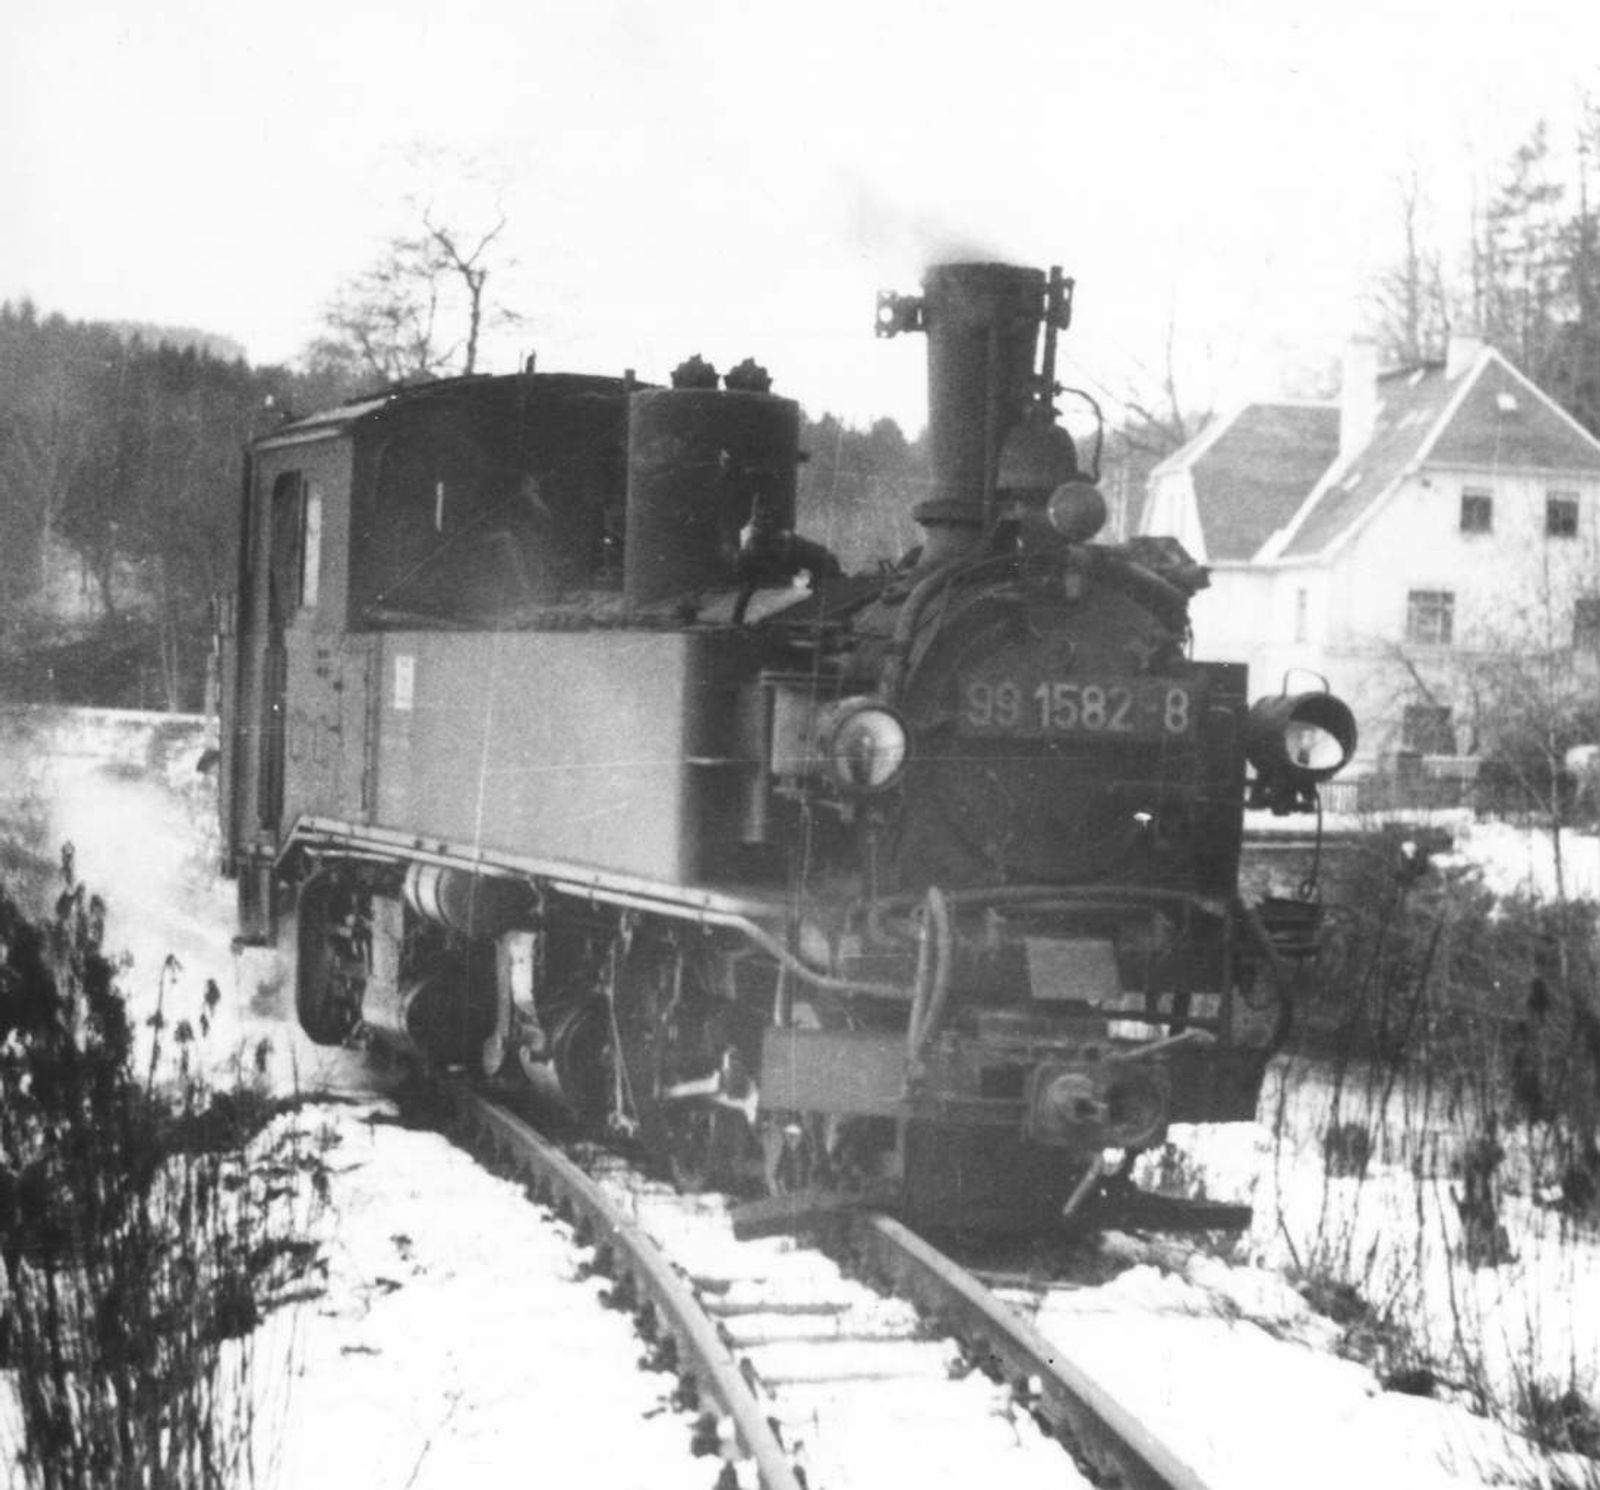 Entgleiste Lok 99 1582-8 bei Streckewalde.